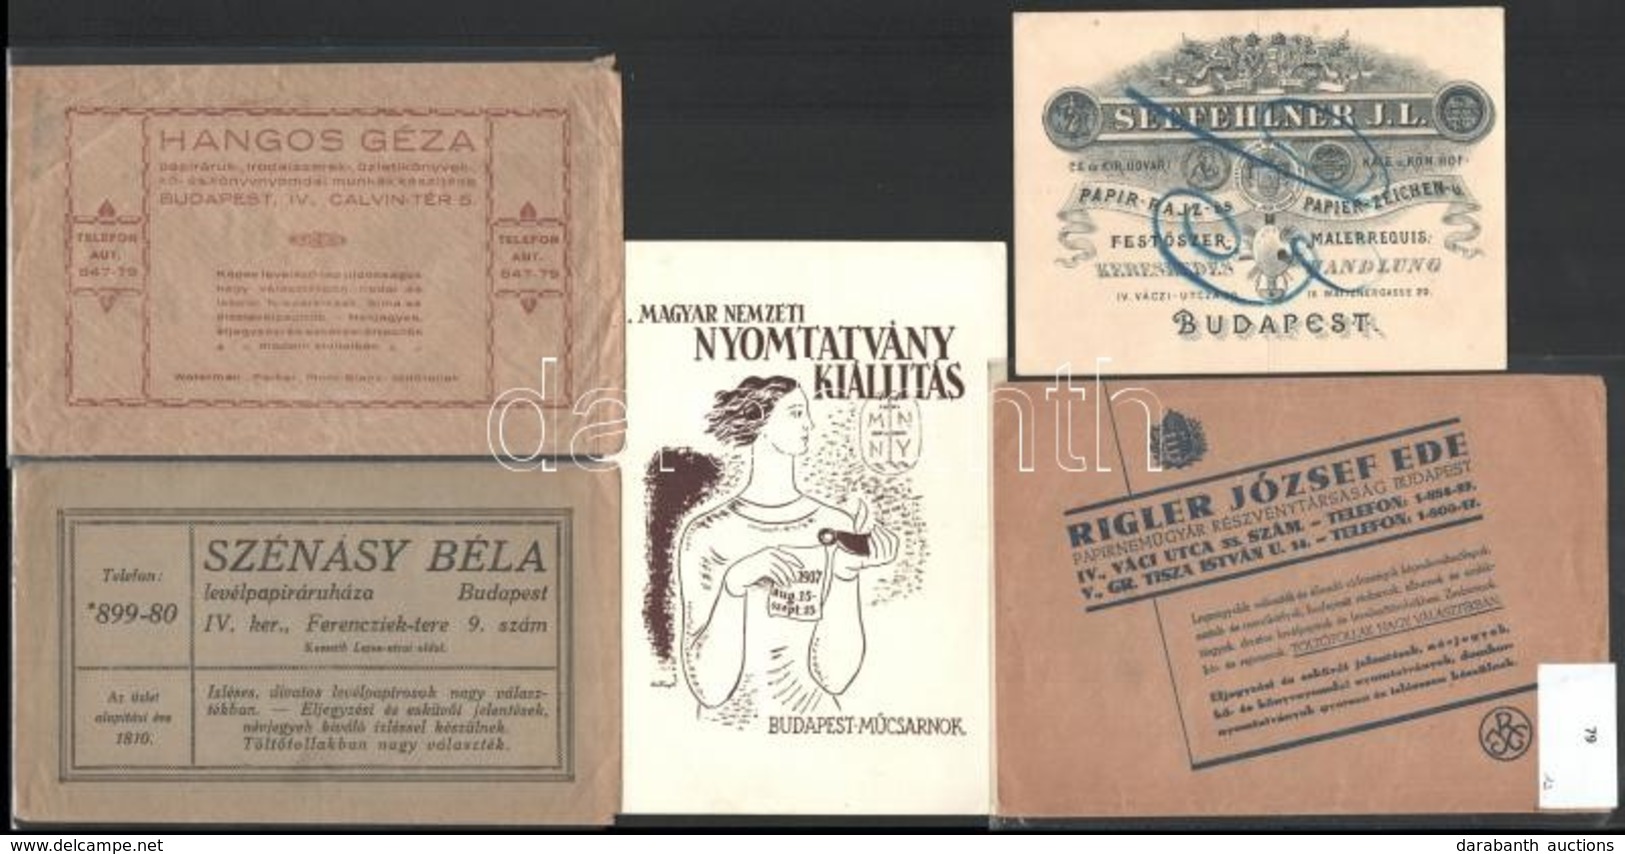 Papíráru Témájú Reklámanyagok (Rigler József Ede, Szénásy Béla, Hangos Géza, Seefehlner J.L., Magyar Nemzeti Nyomtatvány - Advertising